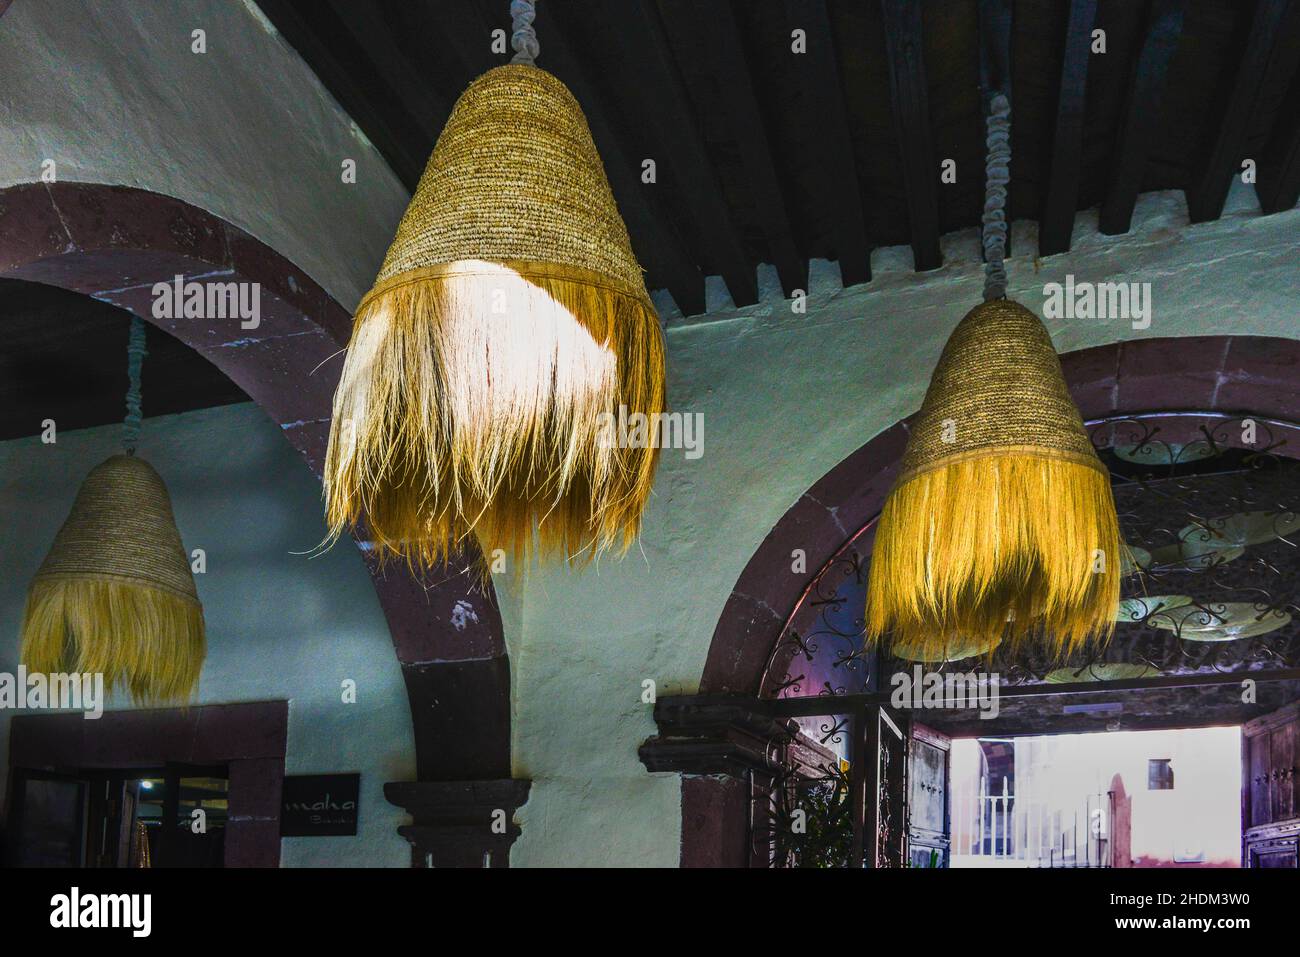 Galerie avec cour qui offre une belle décoration d'intérieur, comme ces magnifiques chandeliers fibreux faits à la main à San Miguel de Allende, MX Banque D'Images